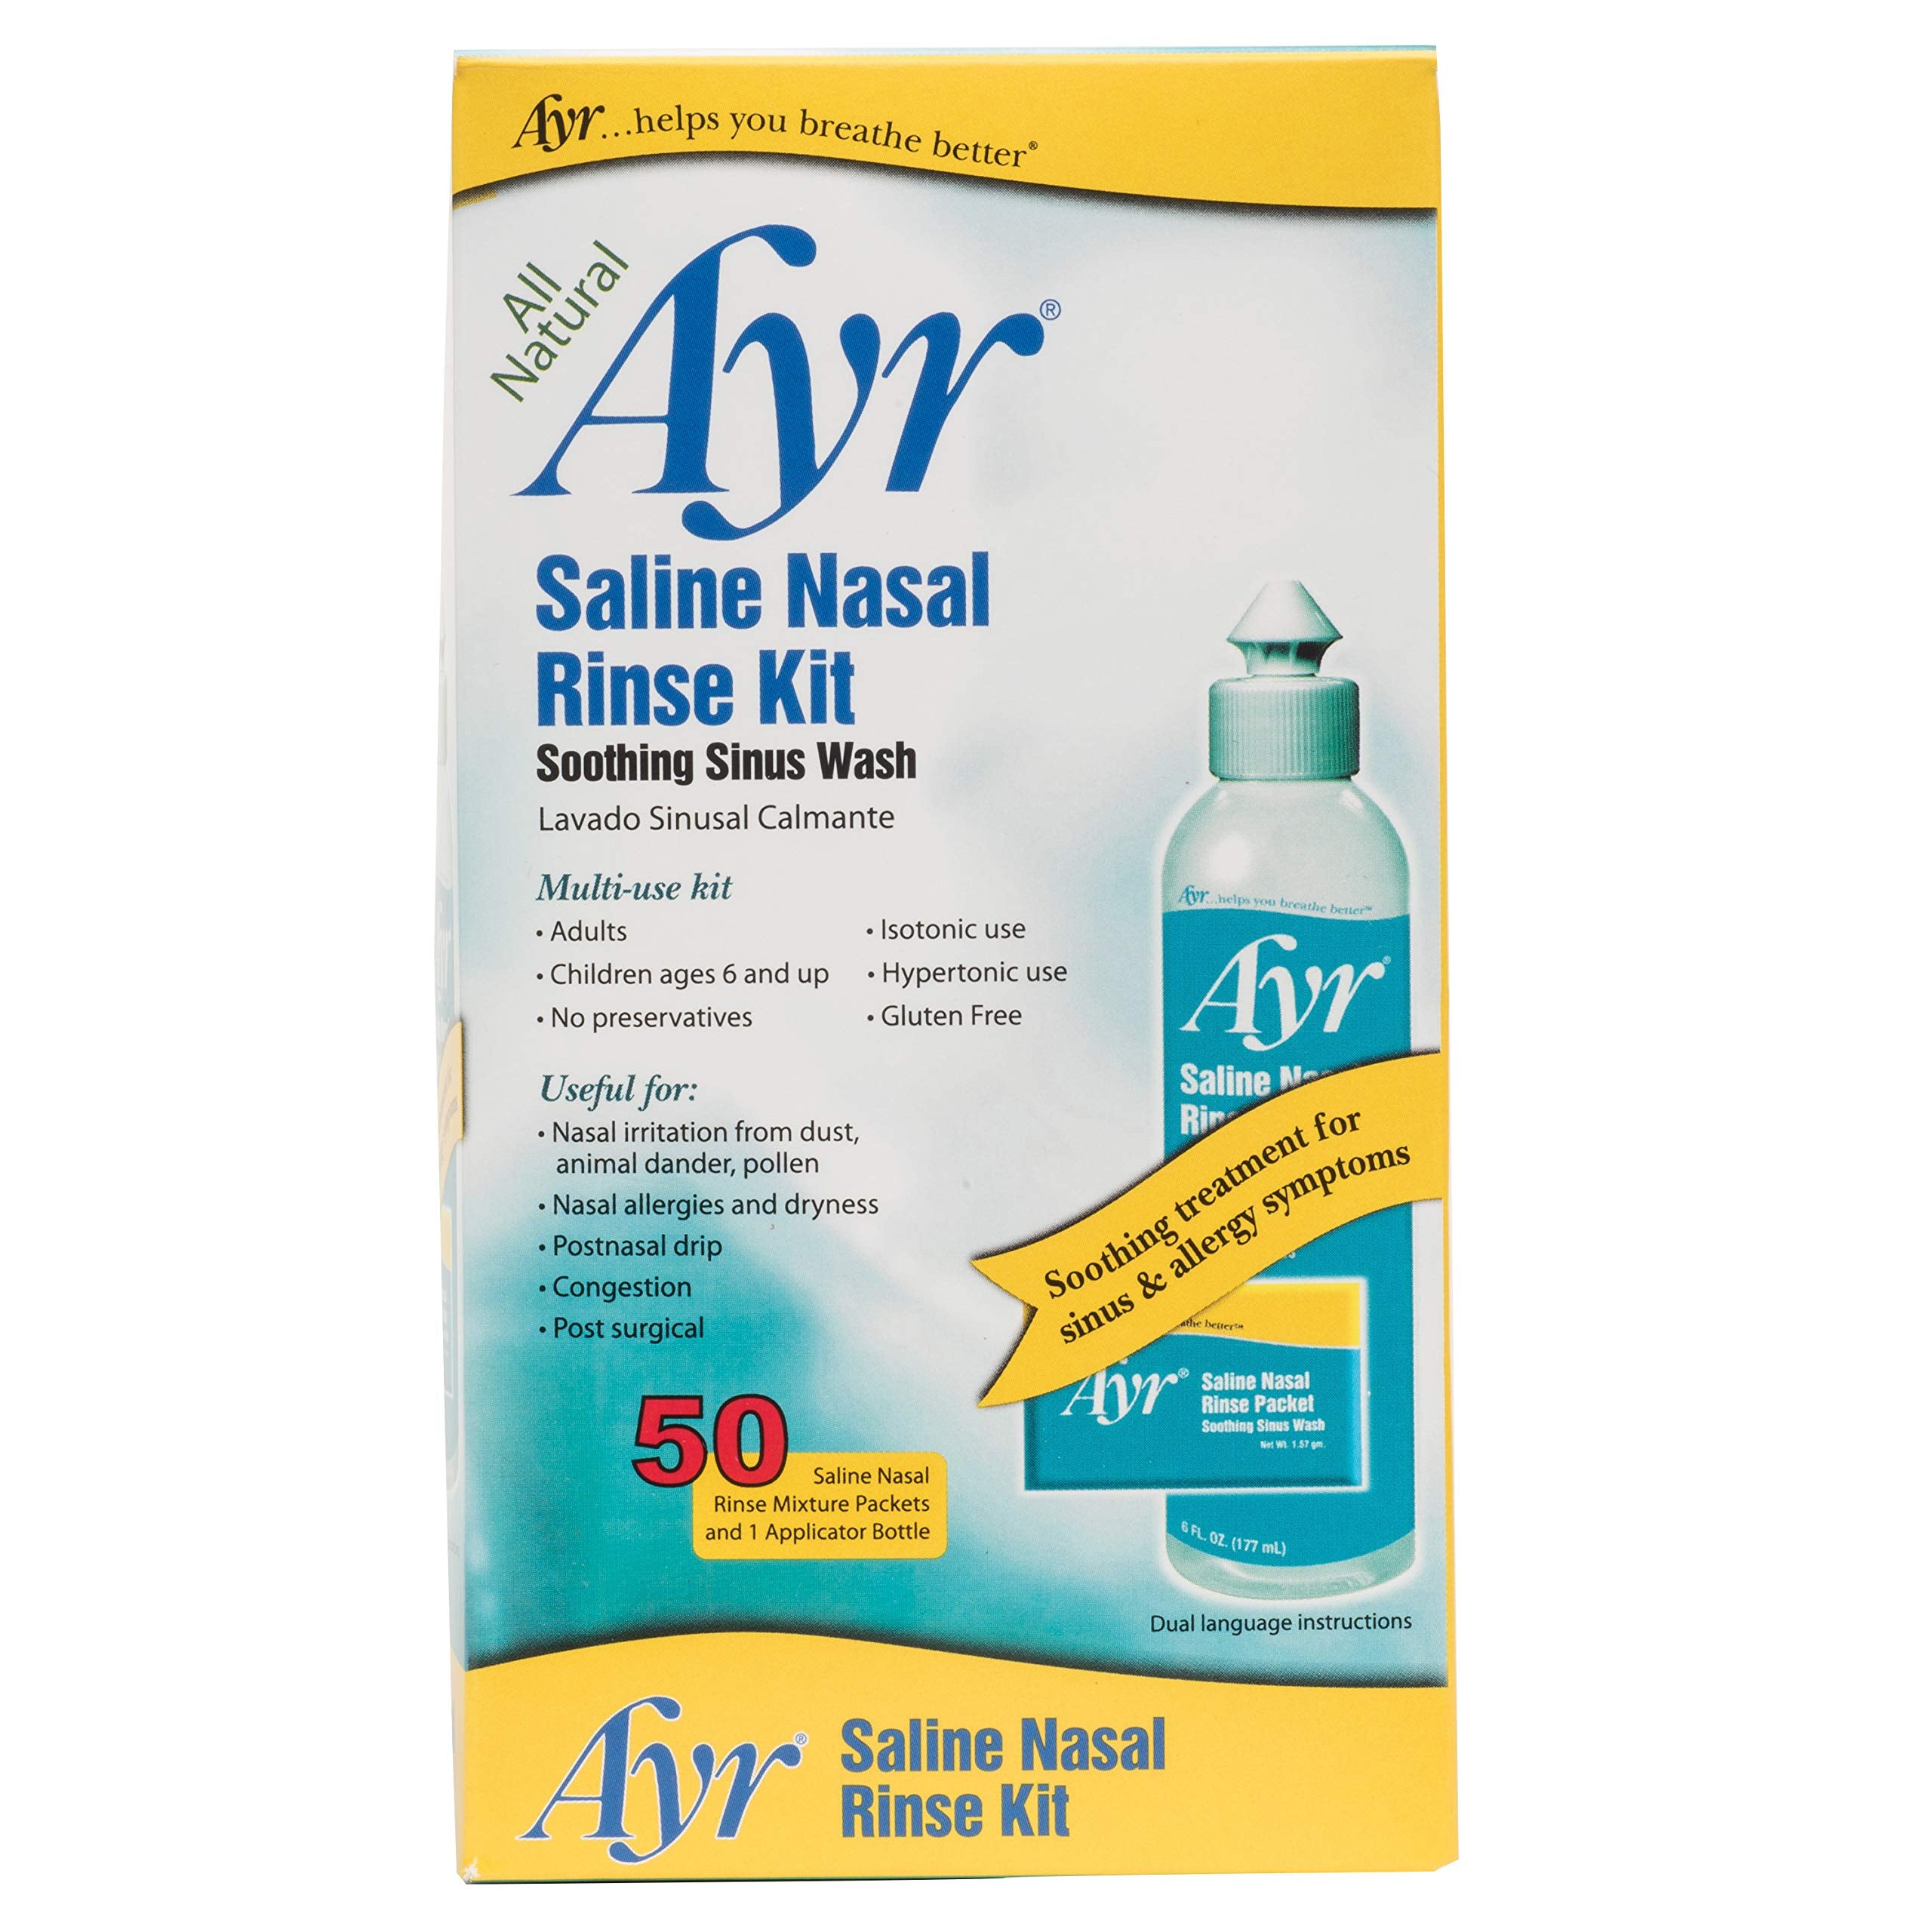 Ayr Saline Nasal Rinse Kit Soothing Sinus Wash, 50 Count Saline Nasal Rinse Mixture Packets Plus Applicator Bottle